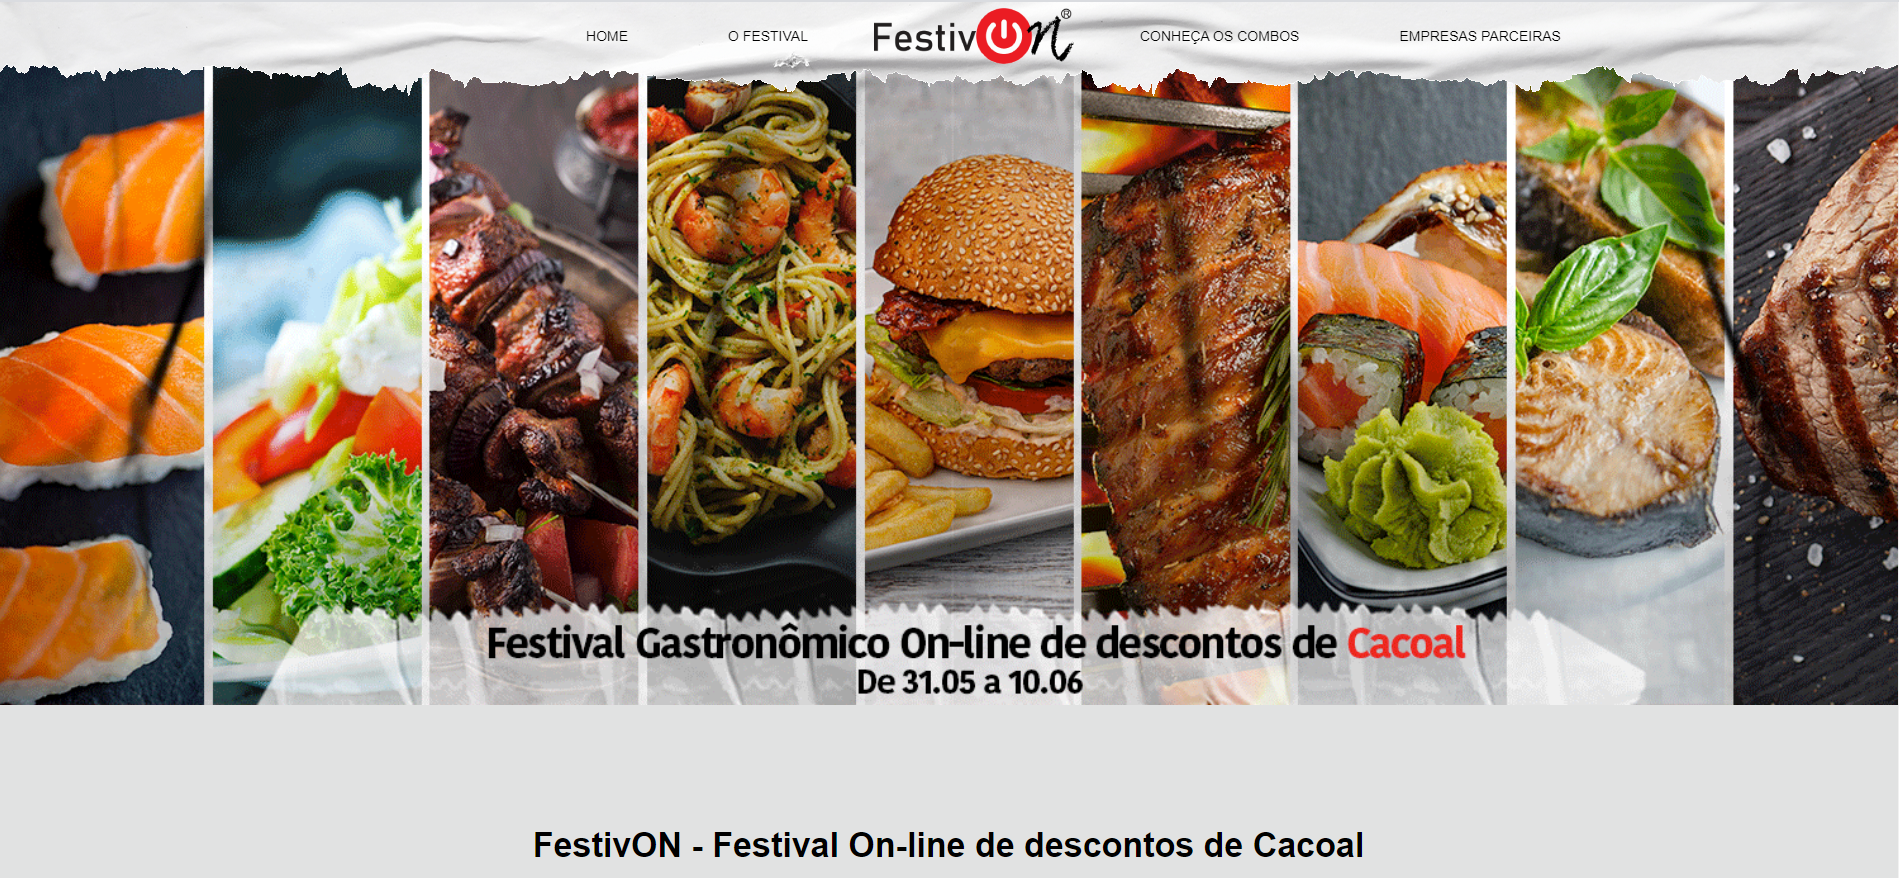 FESTIVAL: FestivON reúne gastronomia de qualidade e promoções deliciosas